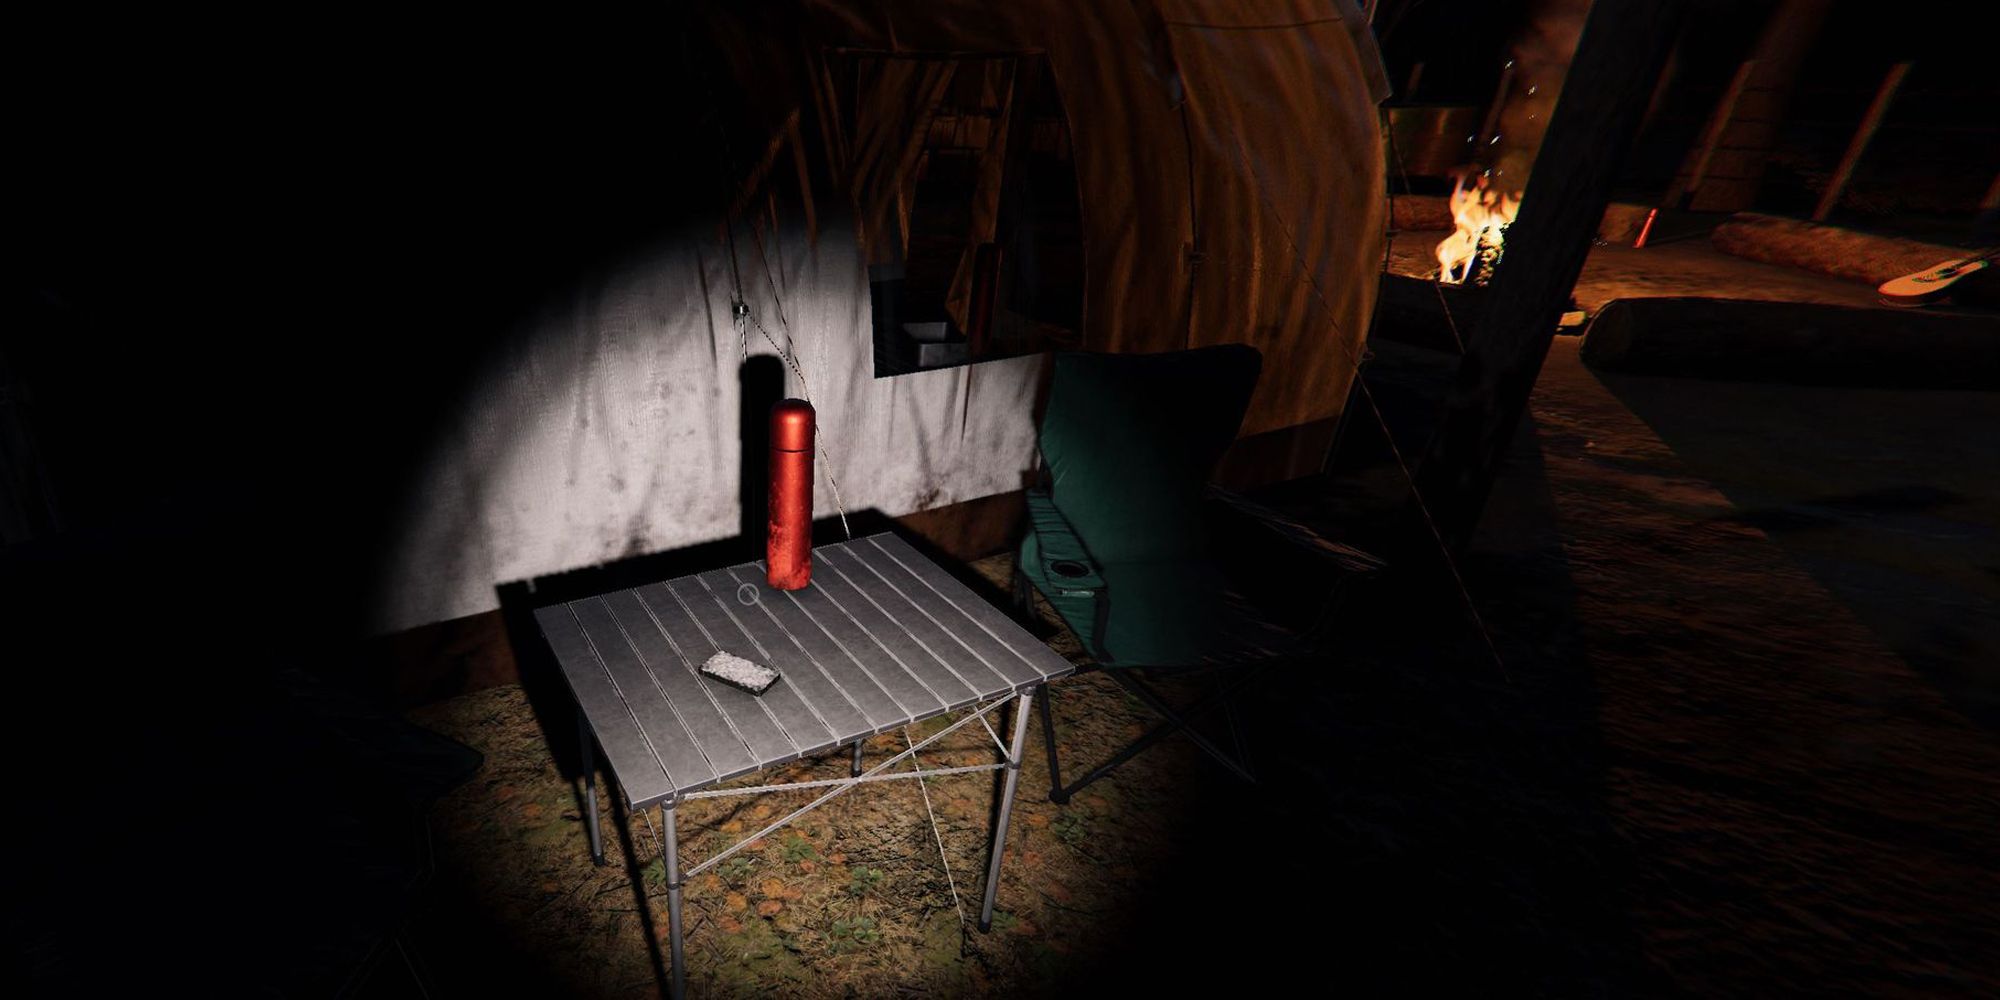 图片展示了枫树小屋露营地的小露营桌上放着一副塔罗牌和旁边有一个红色瓶子。